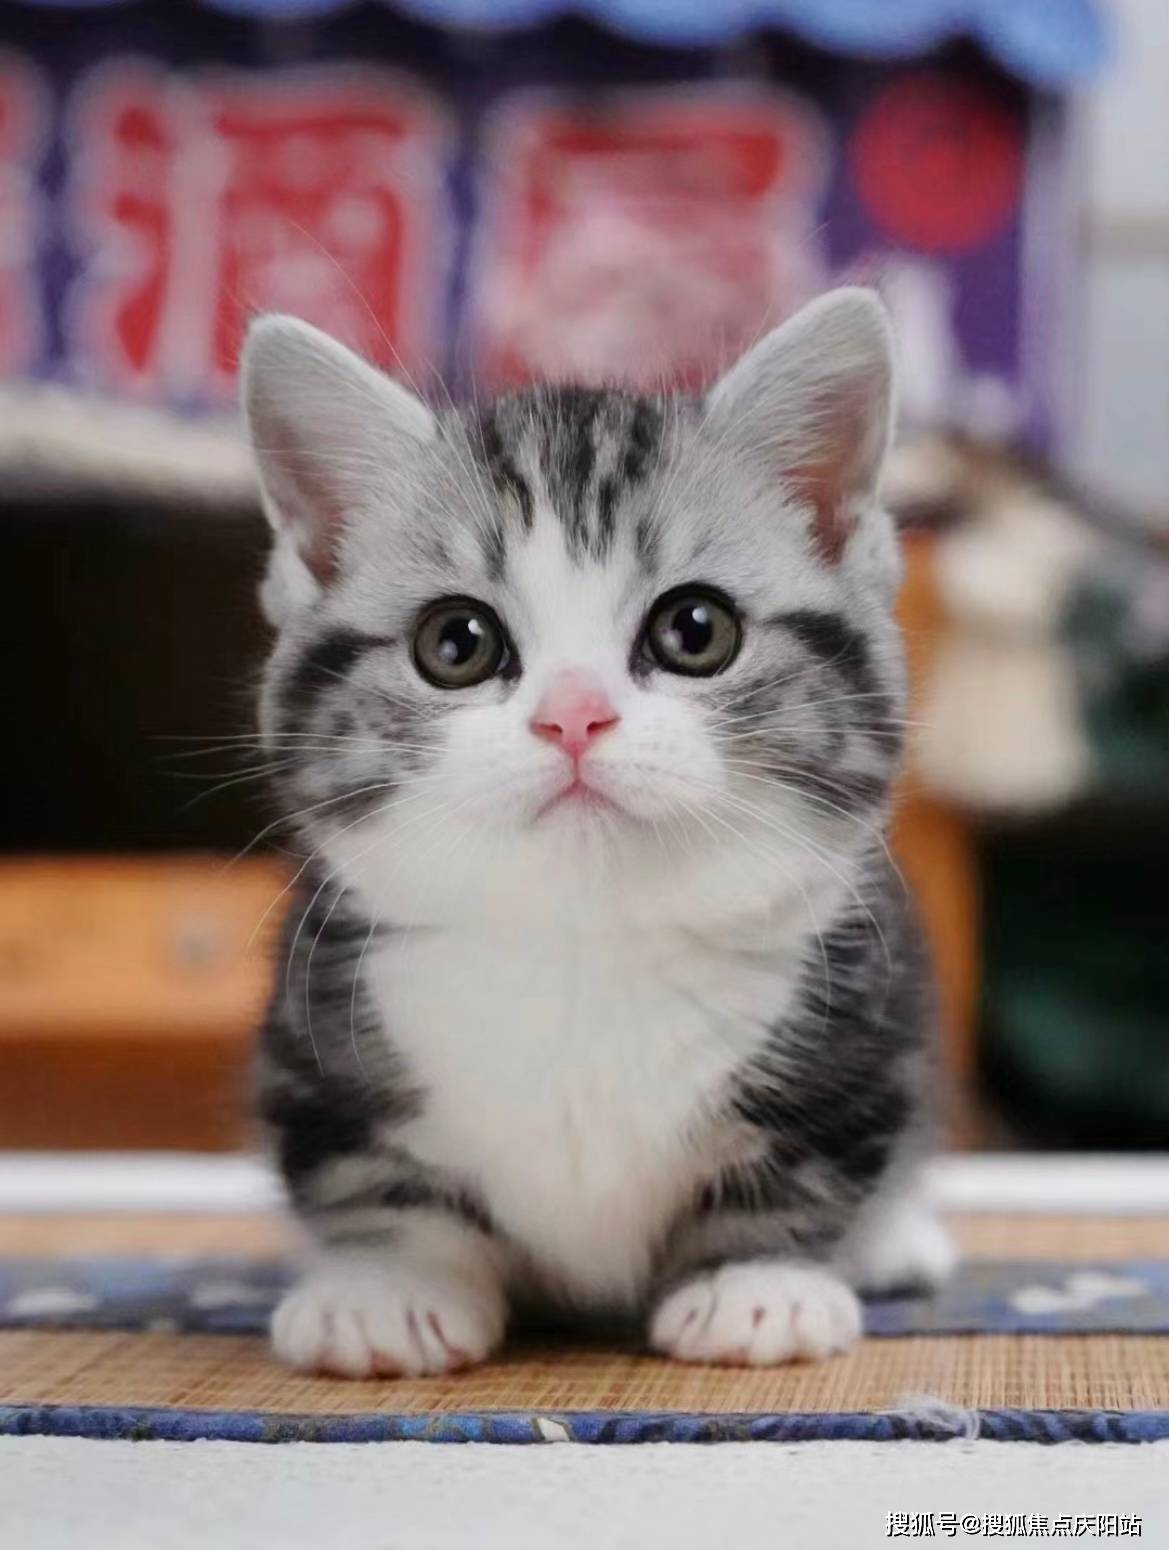 厦门买美短起司猫首页网站(厦门海沧区)哪家宠物店有卖美短起司猫的